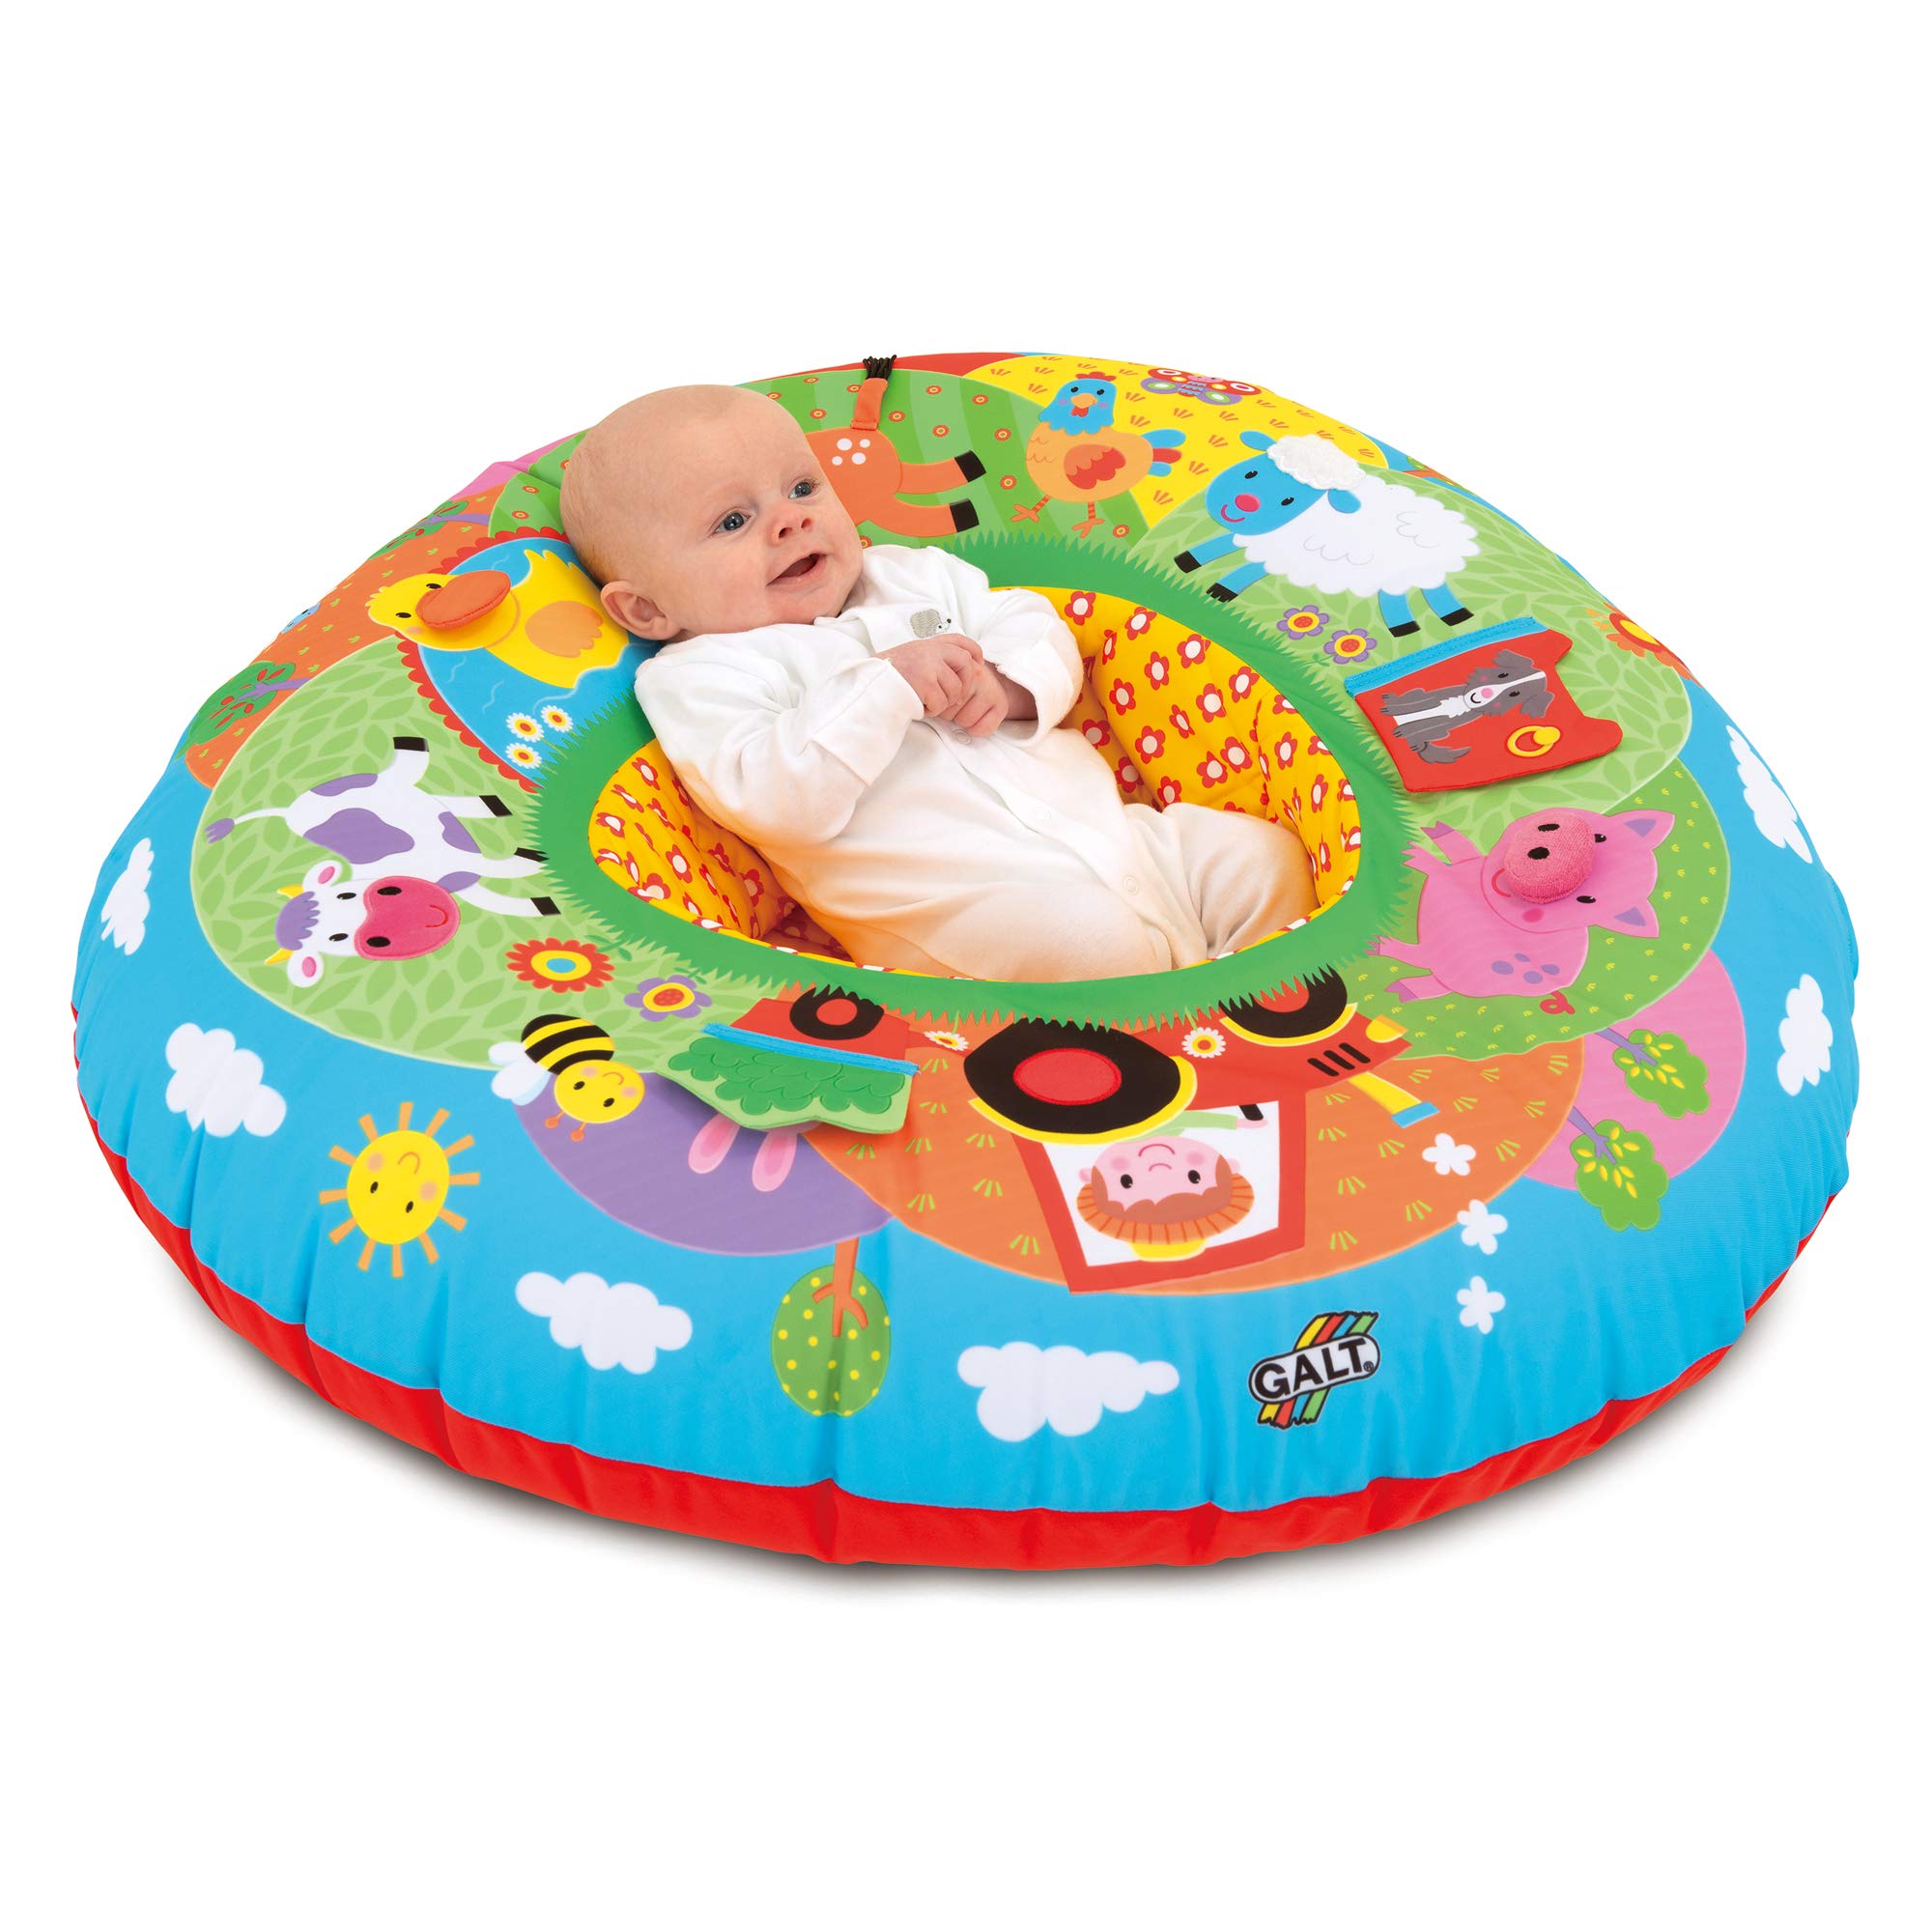 Galt Toys, Playnest - Farm, Sit Me Up Baby Seat, Ages 0 Months Plus, Multicolor